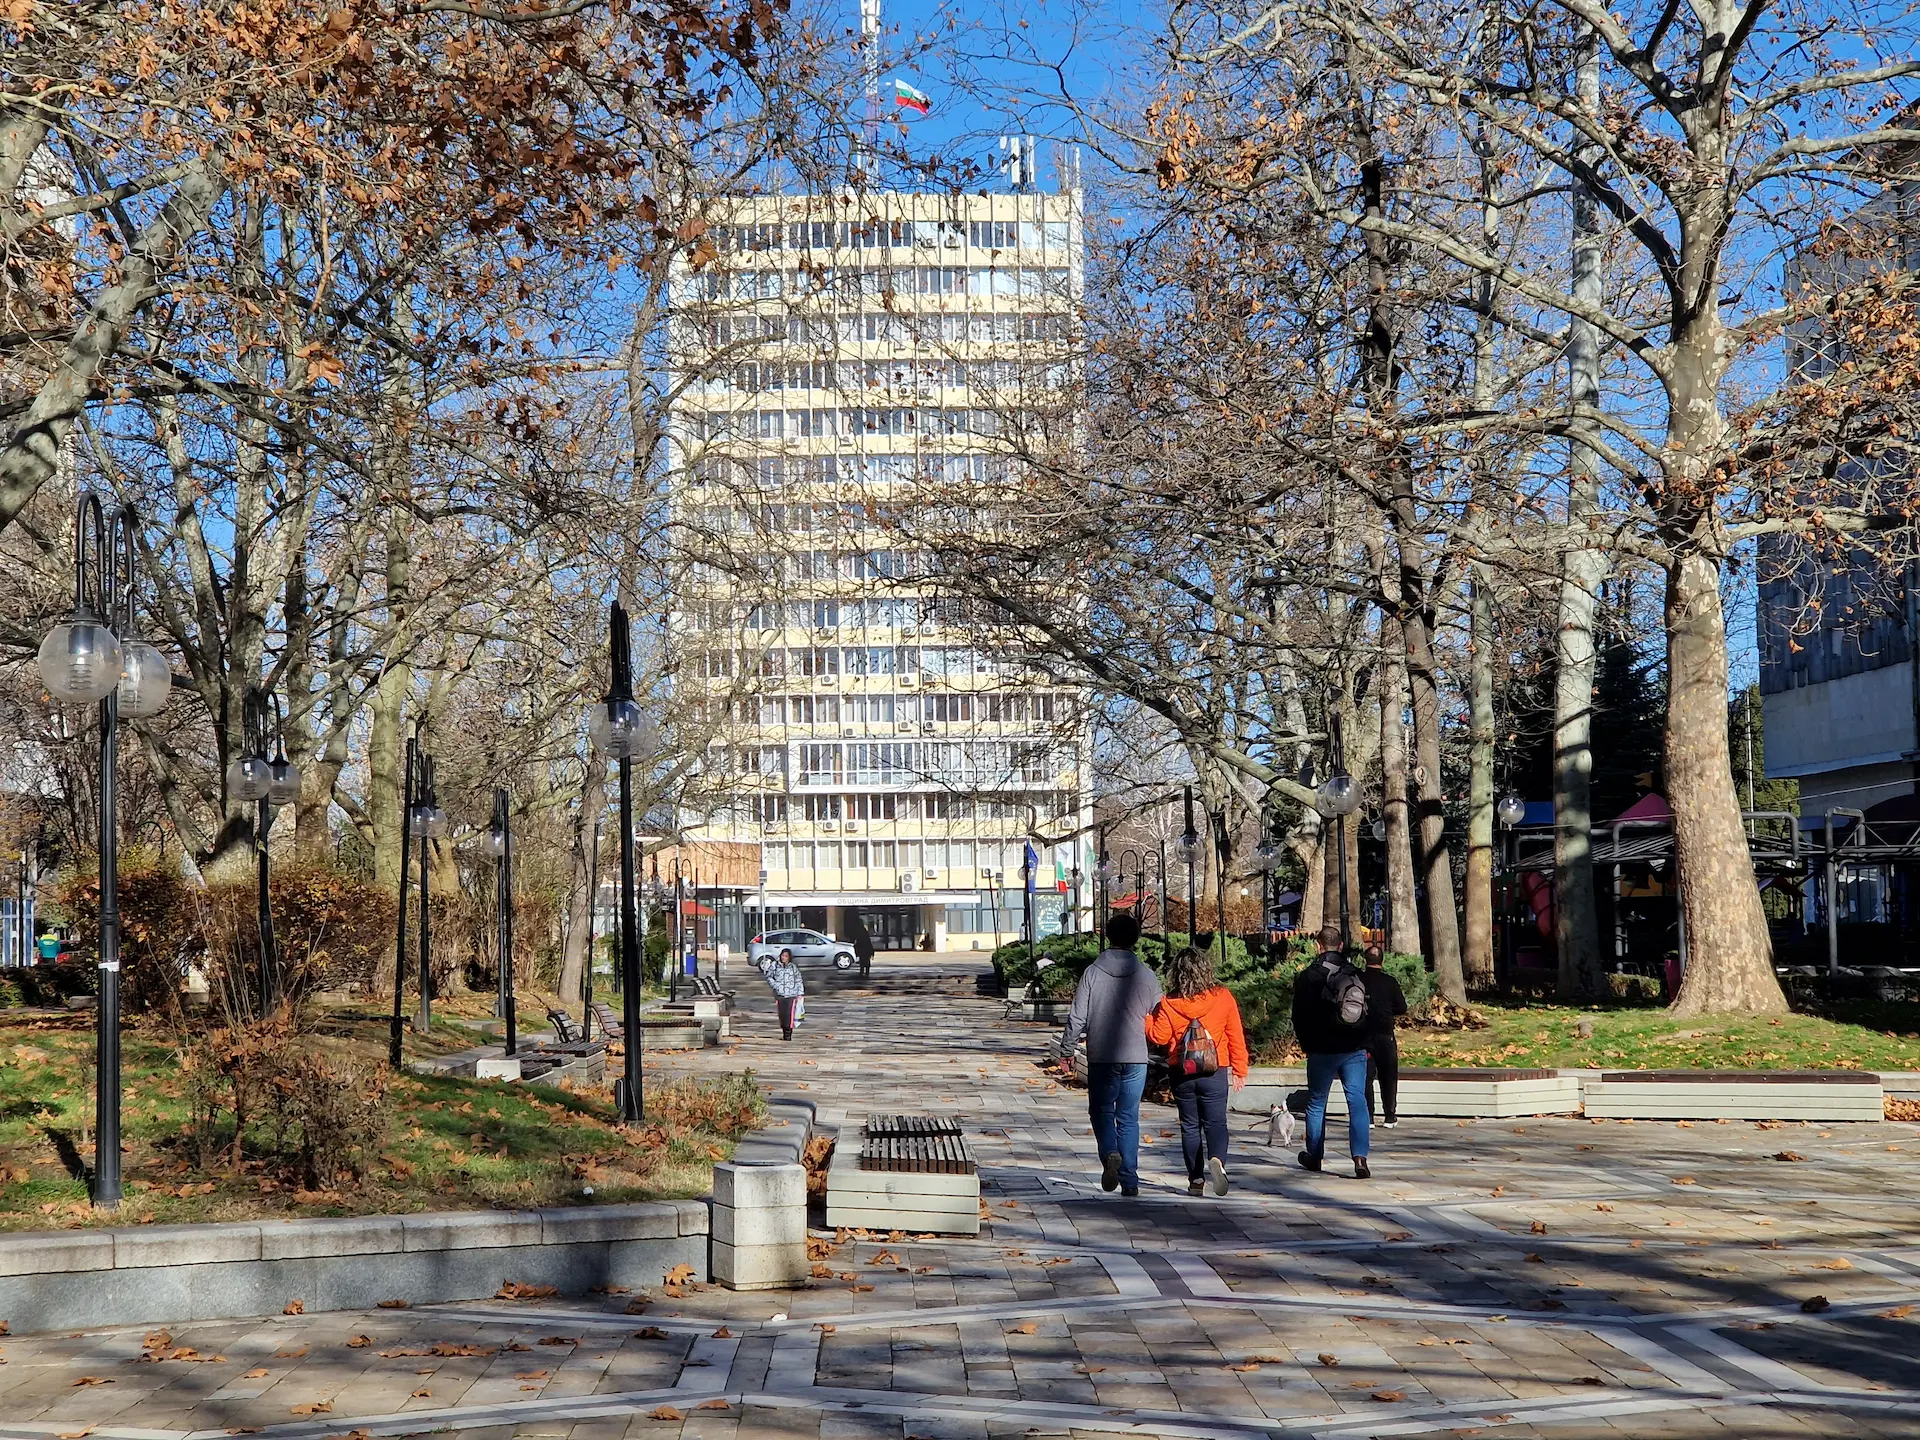 Le boulevard Bulgaria, la rue est pavée et bordée d'arbres, au fond on voit une grande tour blanche